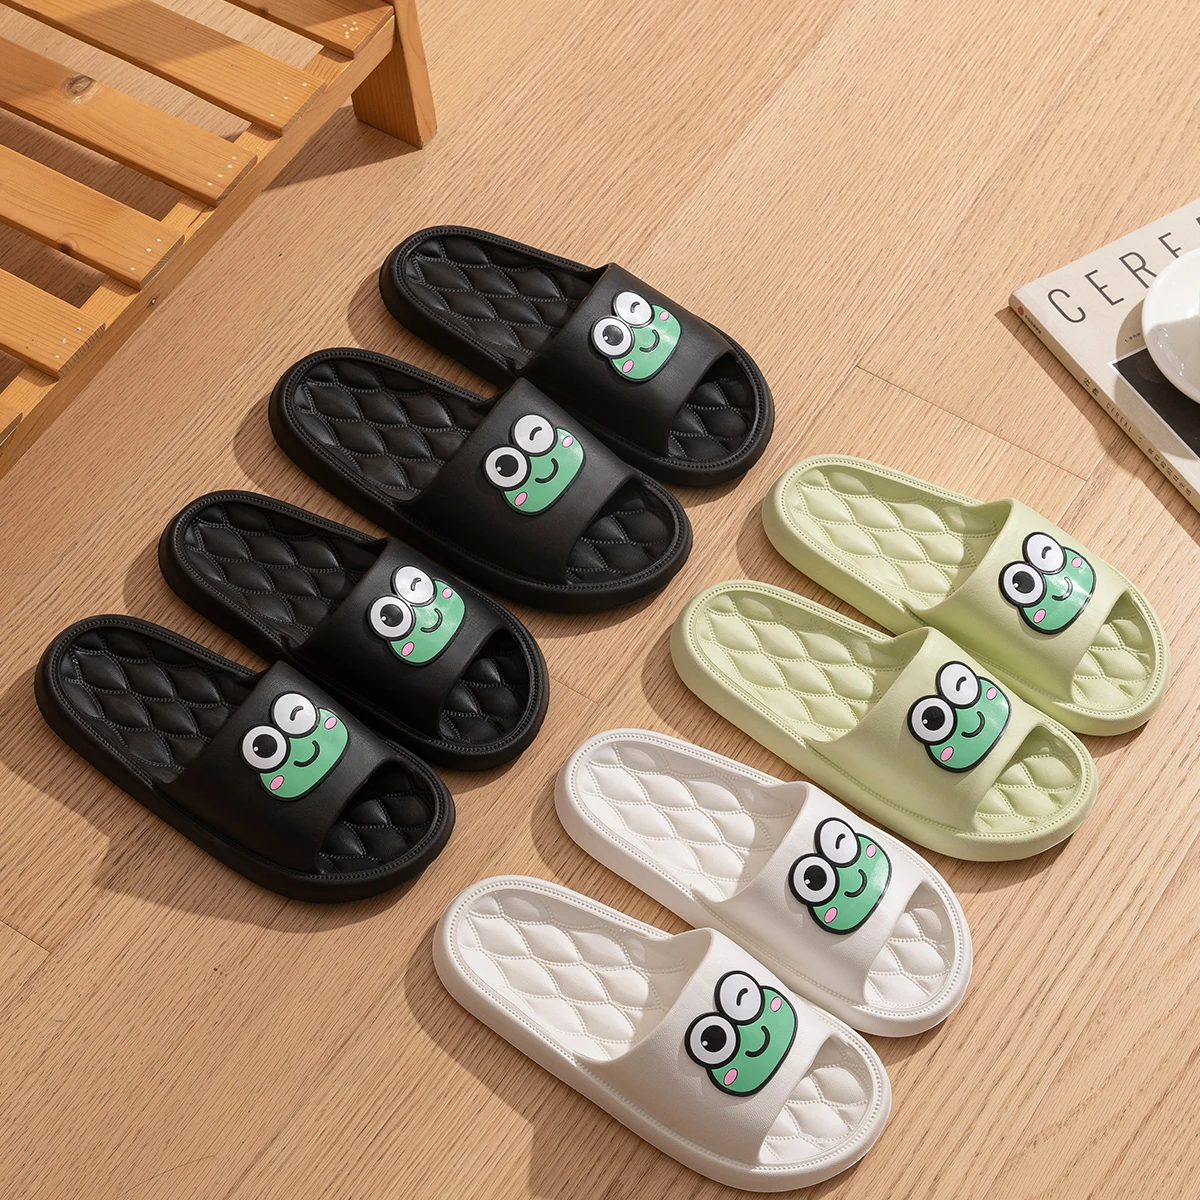 Frog Slippers Female Summer Household Korean Version of Rhombic Slippers Bathroom Non-slip Bath Sandals for Women Cross-border